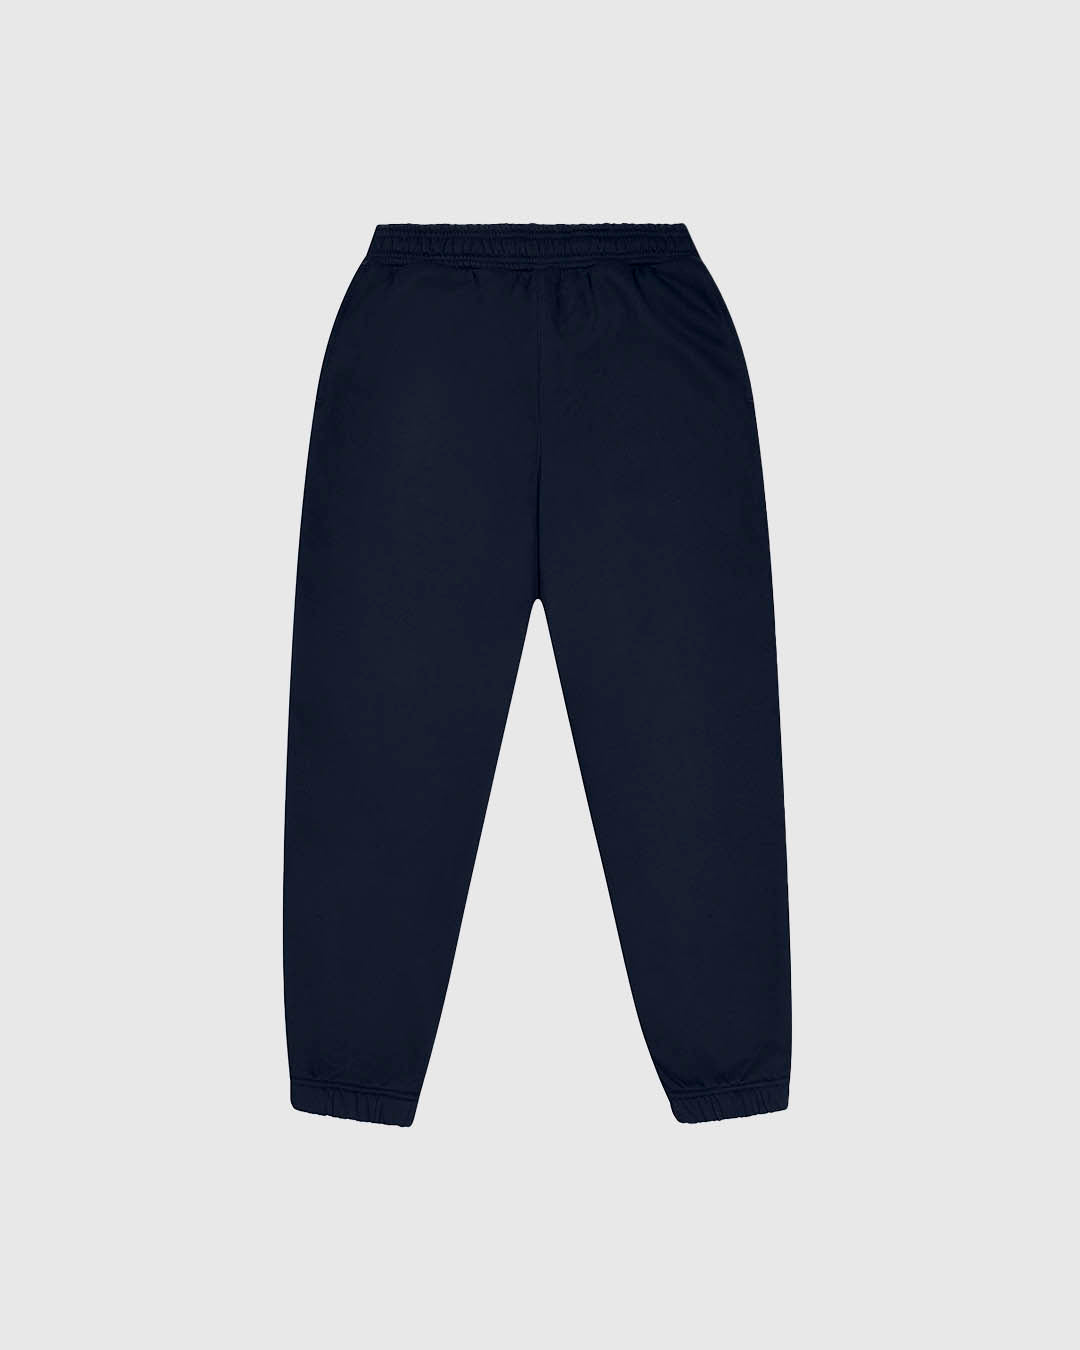 PFC: 003-3 - Men's Sweatpants - Navy